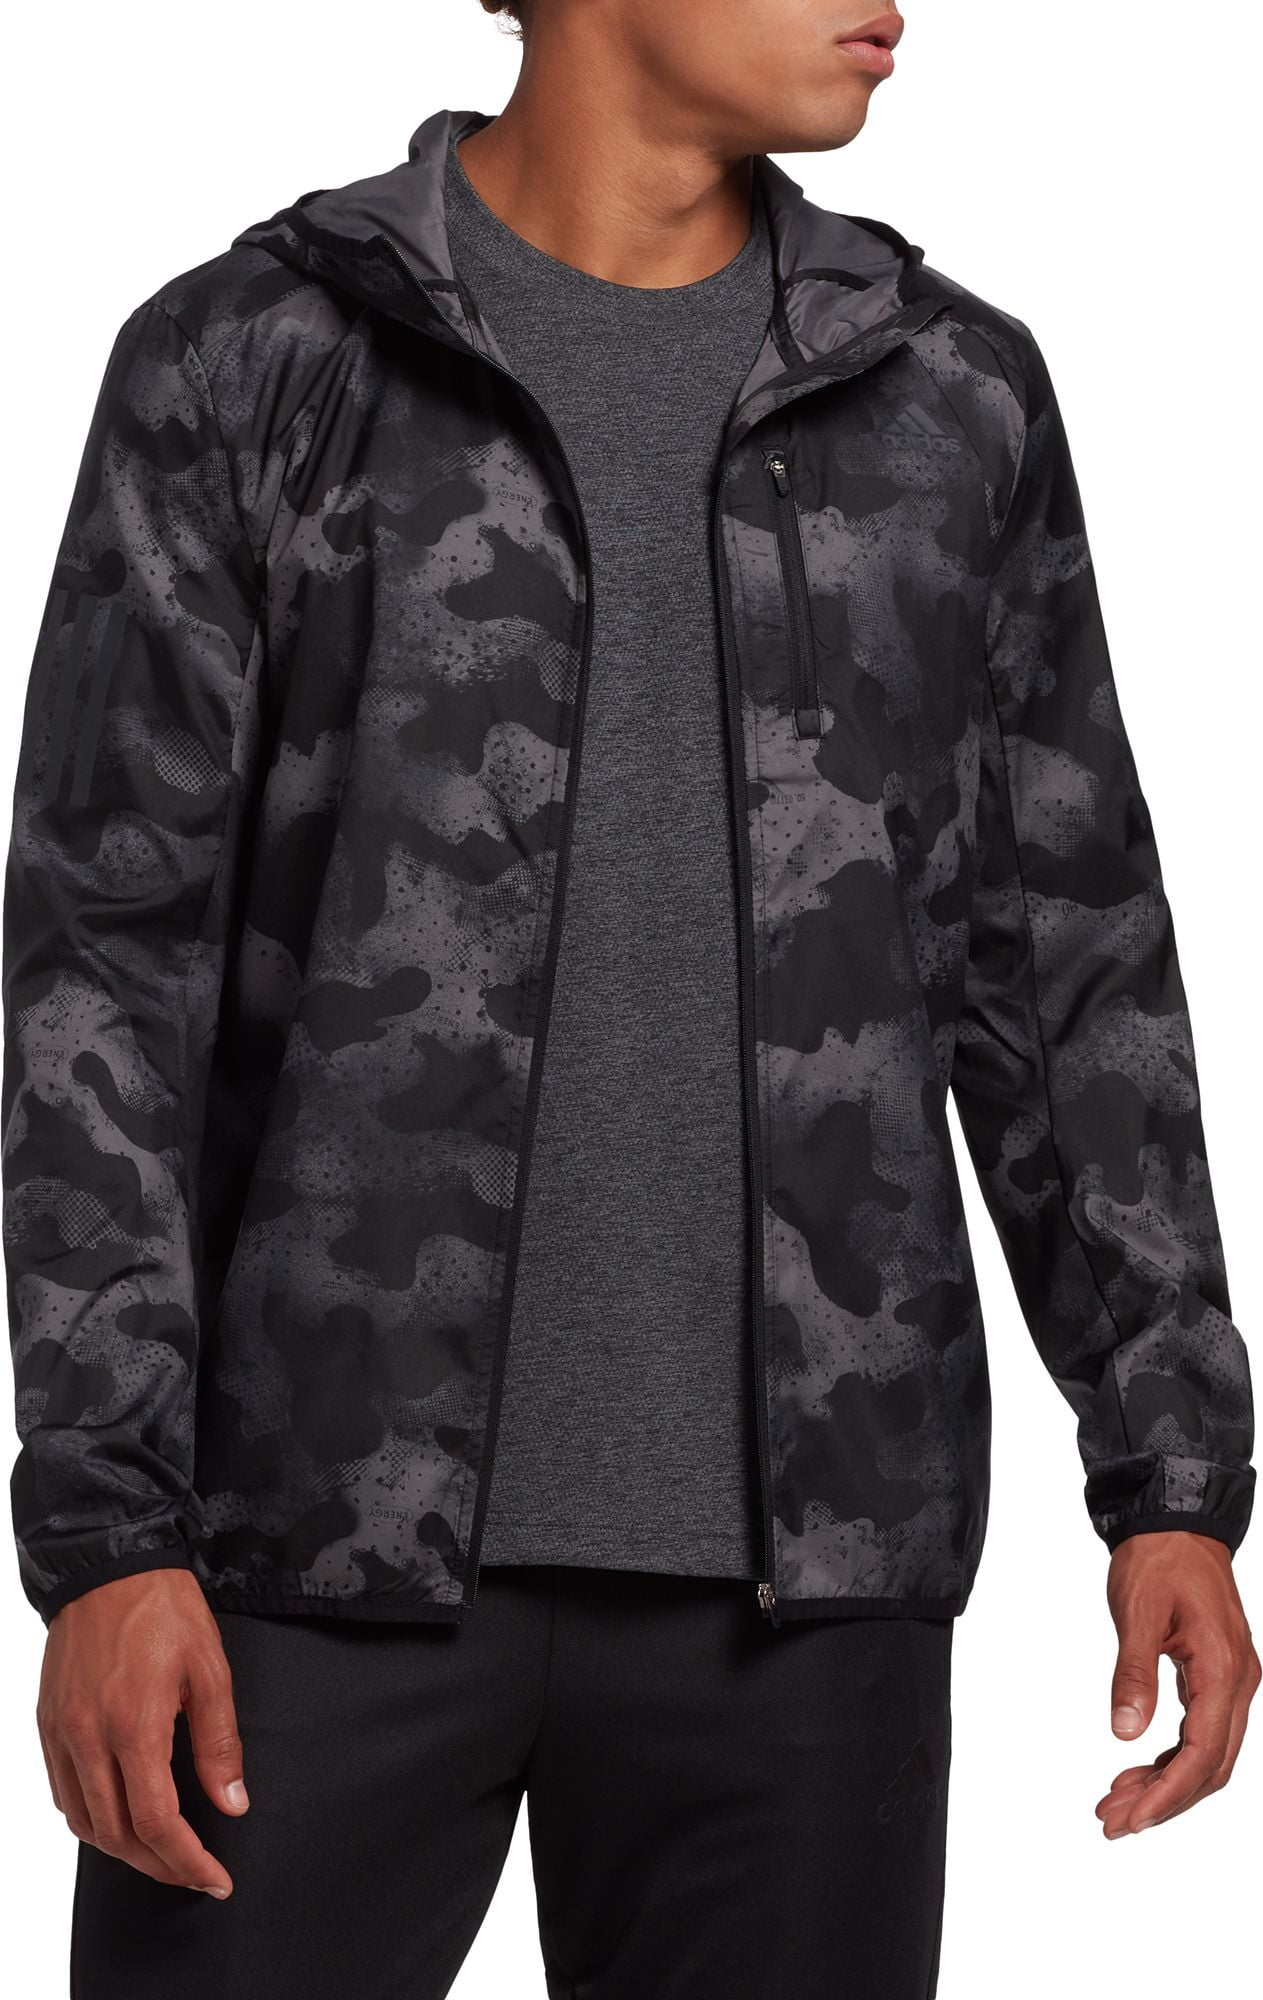 de ahora en adelante Recitar unidad adidas Men's Own The Run Camouflage Running Jacket - Walmart.com